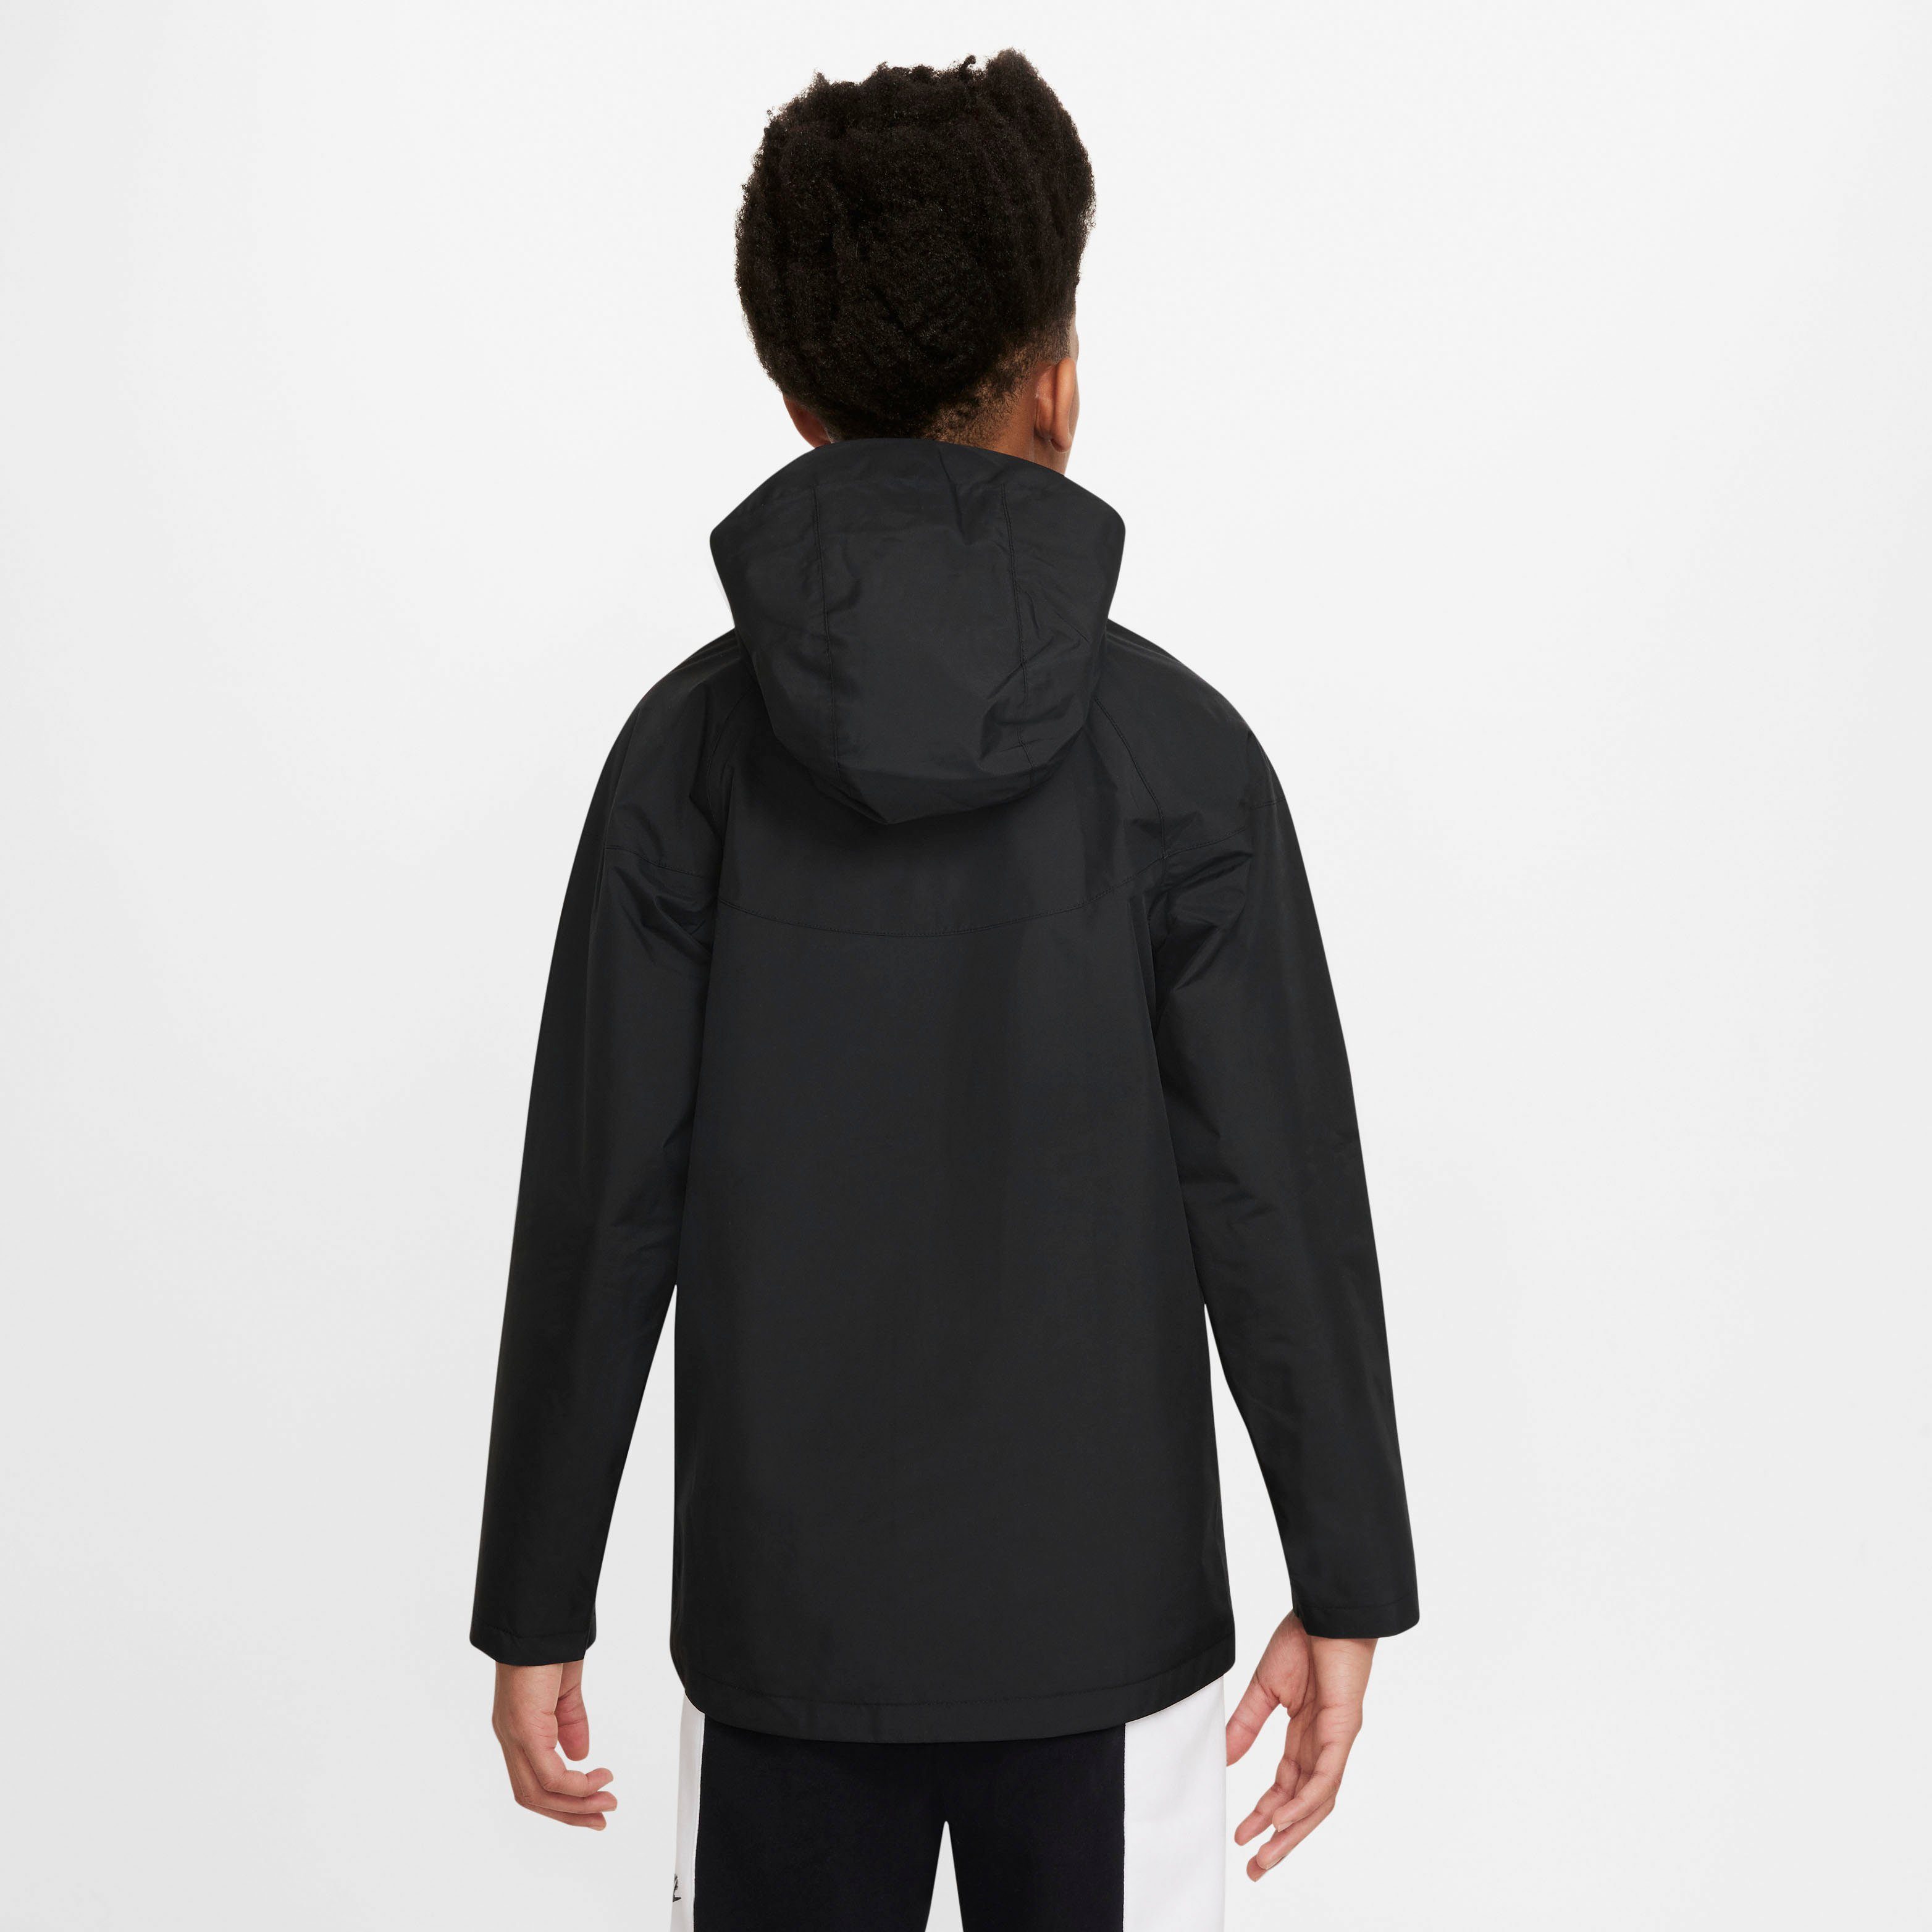 BLACK/BLACK/WHITE Sportswear Nike (Boys) Windbreaker Storm-FIT Kids' Jacket Windrunner Big